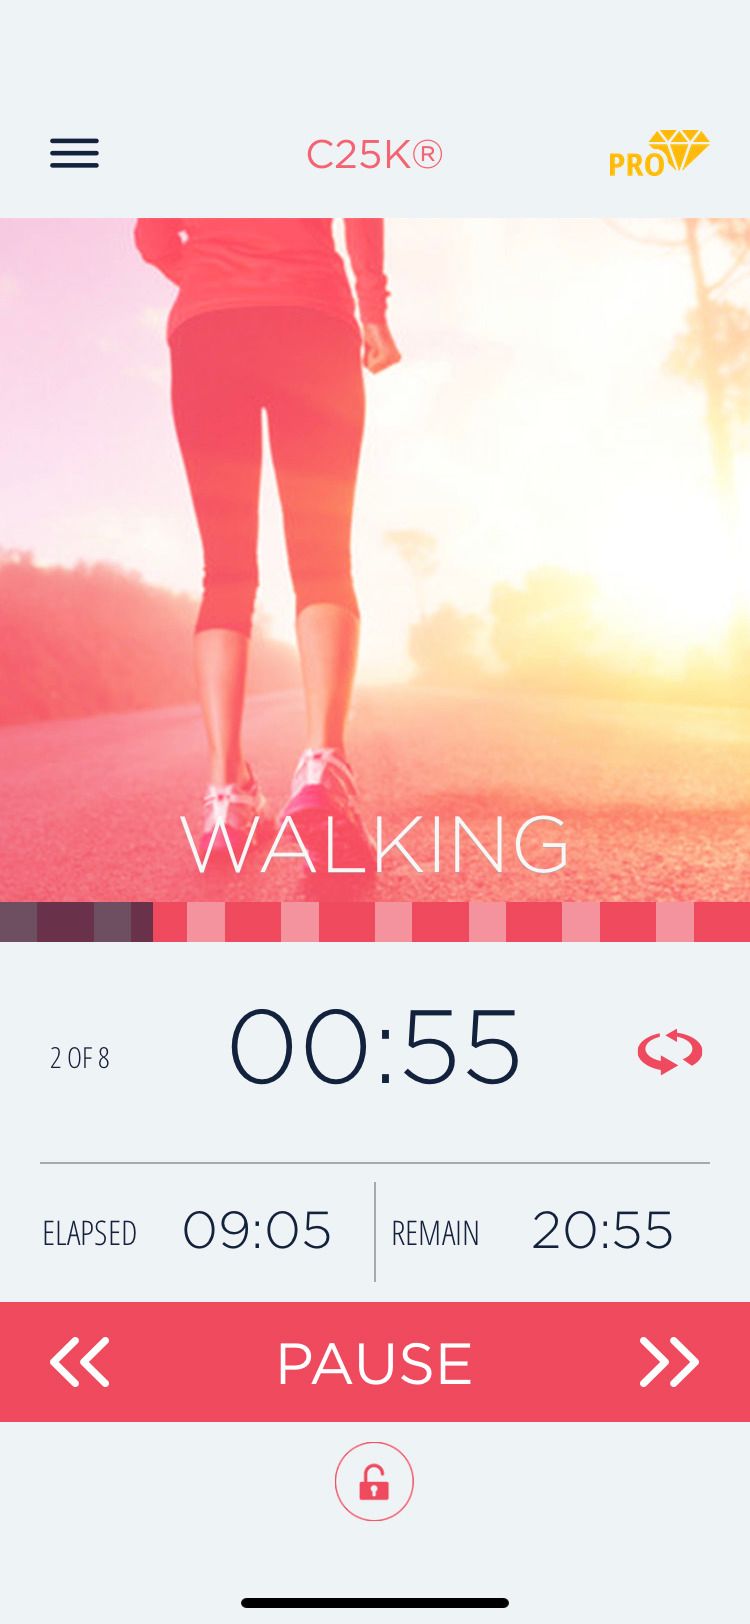 C25K app walking screen